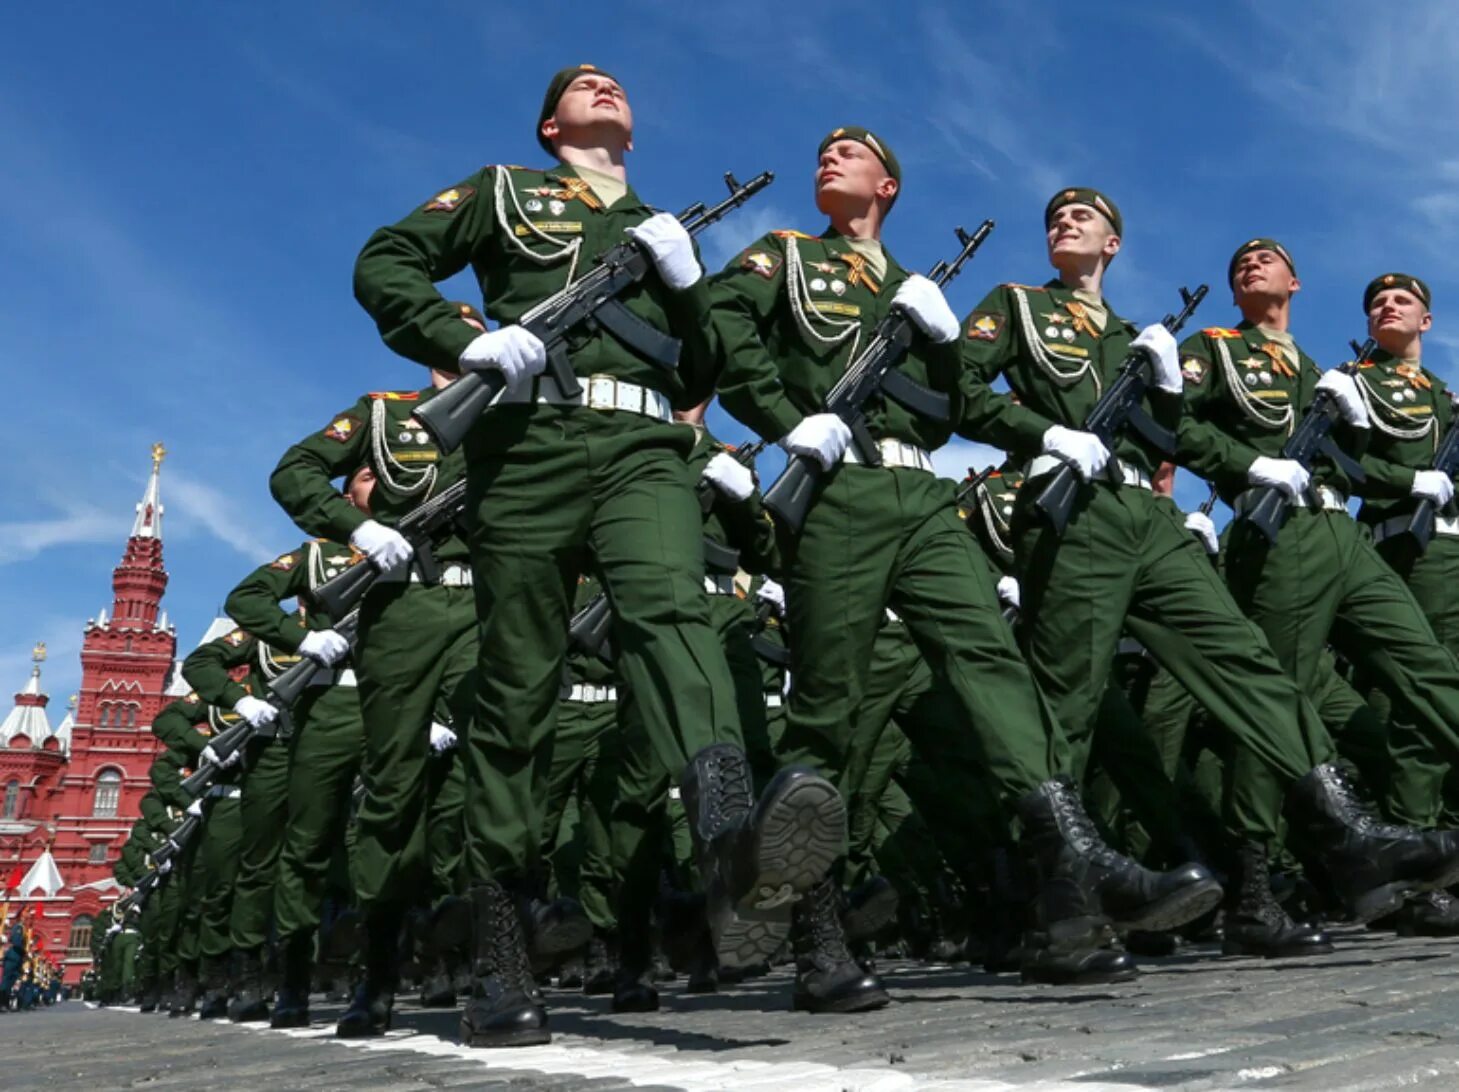 Солдаты на параде. Российский солдат на параде. Русские солдаты на параде. Современная Российская армия.